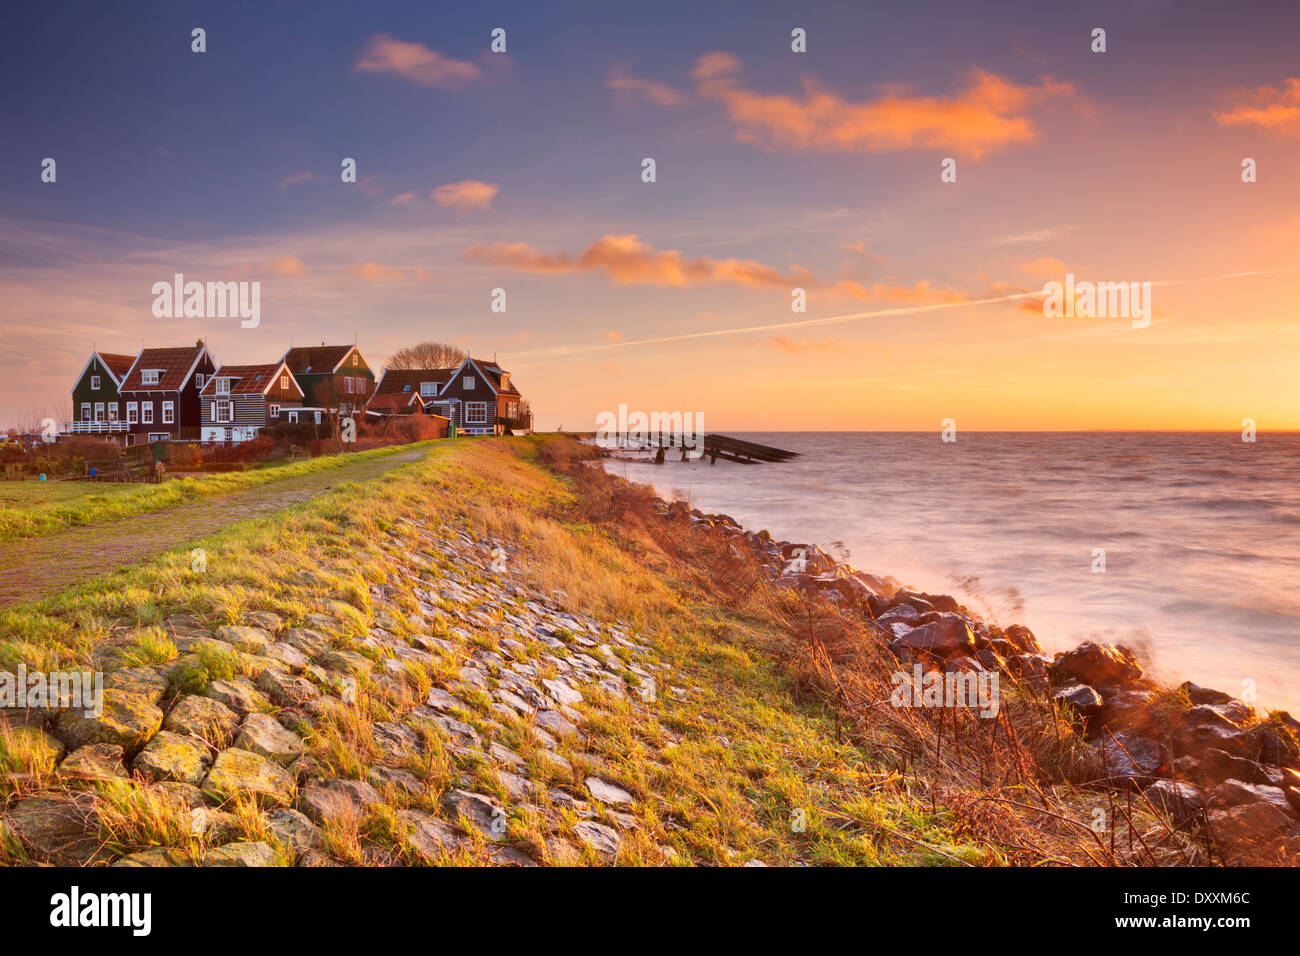 Petit village derrière une digue, photographié sur l'île de Marken dans les Pays-Bas au lever du soleil Banque D'Images